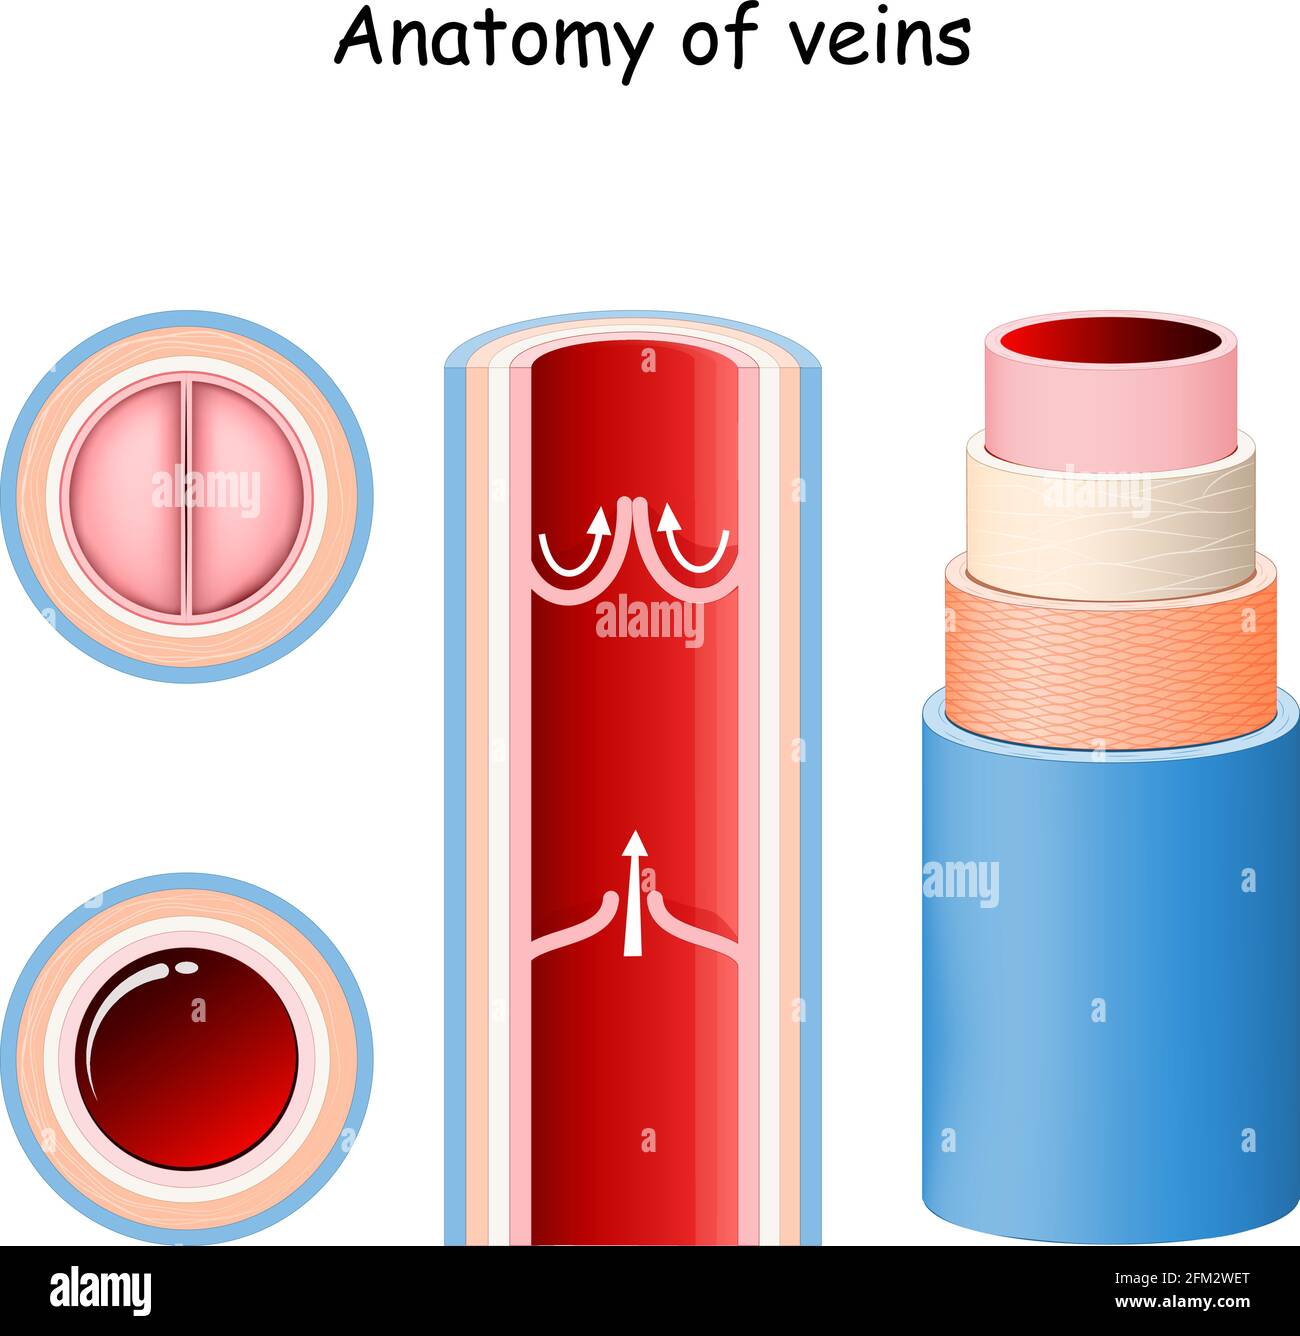 Anatomie der Vene. Struktur des Blutgefäßes. Nahaufnahme der Klappen. Längs- und Querschnitt der Vene. Vektorgrafik Stock Vektor